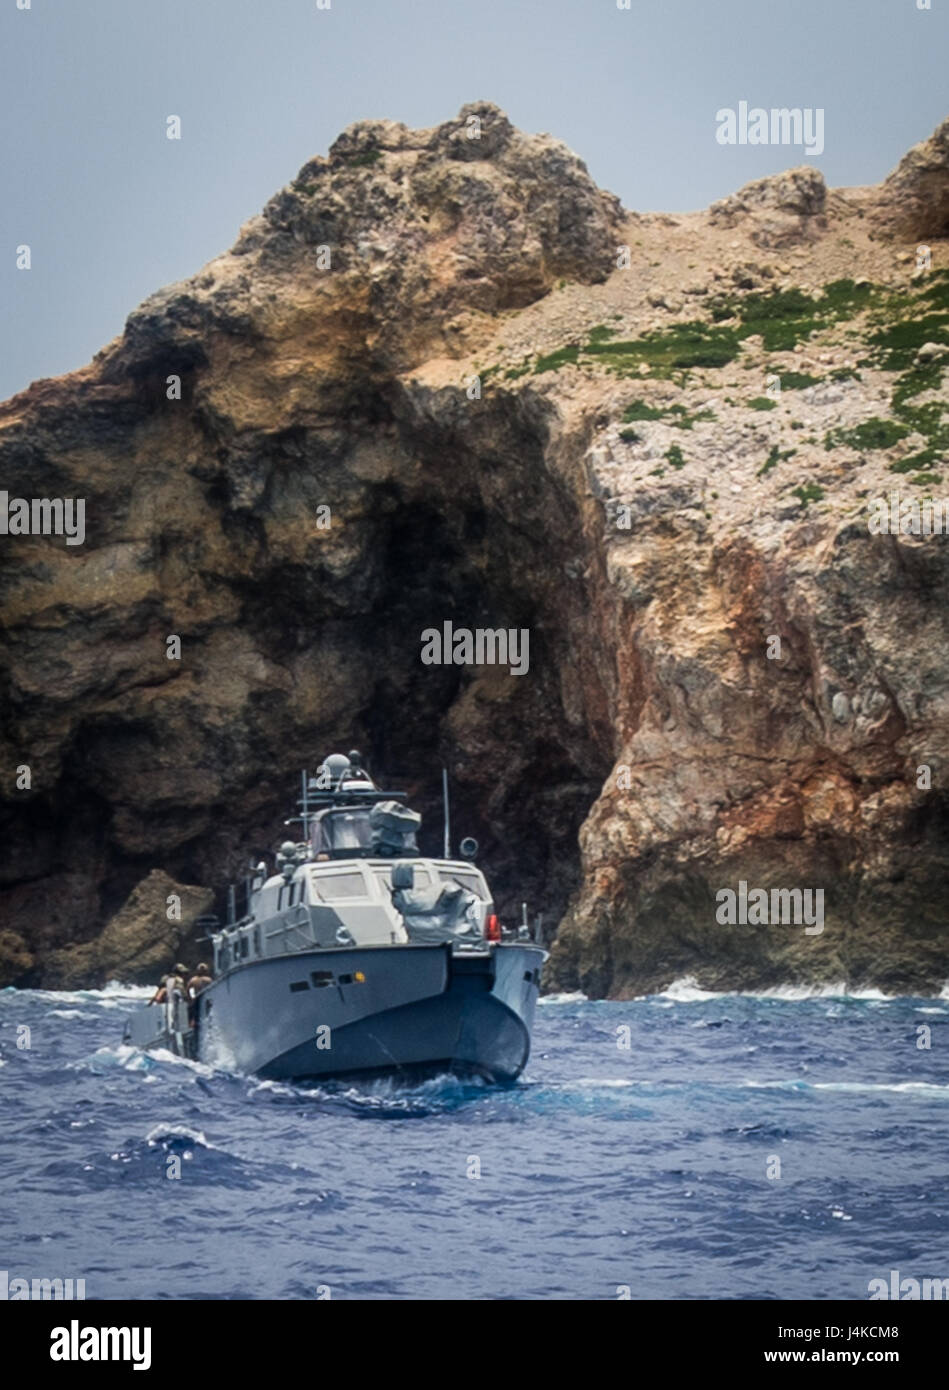 Segler, Explosive Ordnance Mobile Abfallbehälter 5 (EODMU5) zugewiesen Platoon 142 und Coastal Riverine Gruppe 1 Ablösung Guam Praxis Hafen-Clearing Techniken mit unbemannten Unterwasserfahrzeuge, bereitgestellt von einem Patrouillenboot MK VI im Pazifischen Ozean 10. Mai 2017. EODMU5 testet derzeit seine Fähigkeit, Vermögen von verschiedenen Plattformen, einschließlich Hubschrauber bereitstellen und Patrouillenbooten, um seine adaptive Interoperabilität zu erhöhen. EODMU5 führt mir Gegenmaßnahmen, improvisierten Sprengkörpern Operationen, macht sicher Explosive Gefahren und Unterwasser Sprengstoffe wie Minen entschärft. (US-Navy Stockfoto